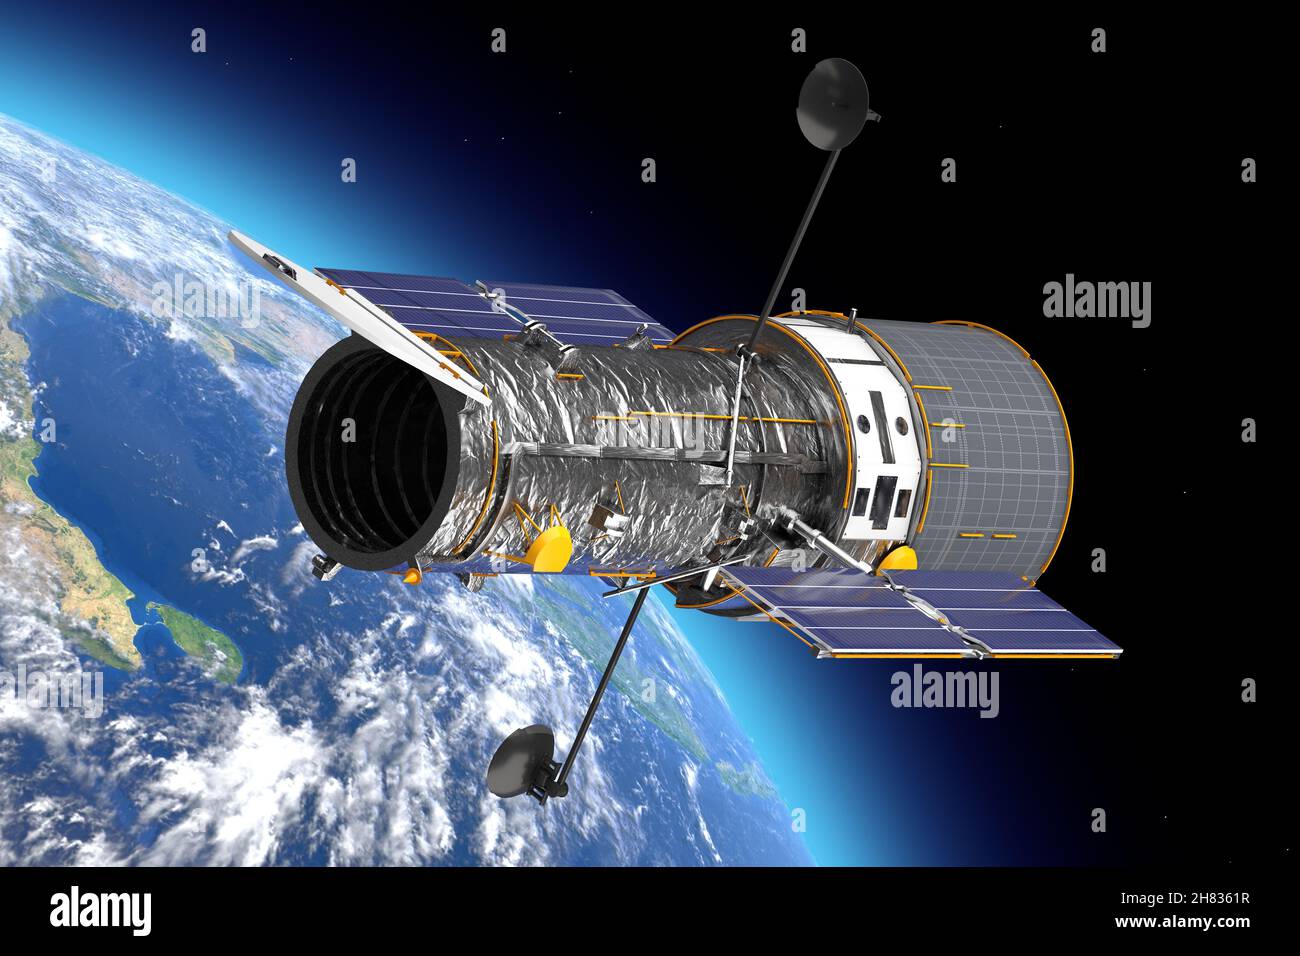 Weltraumteleskop Hubble im Freiraum in der Nähe von Planete Erde extreme Nahaufnahme. Elemente dieses Bildes, die von der NASA eingerichtet wurden. 3D Rendering Stockfoto